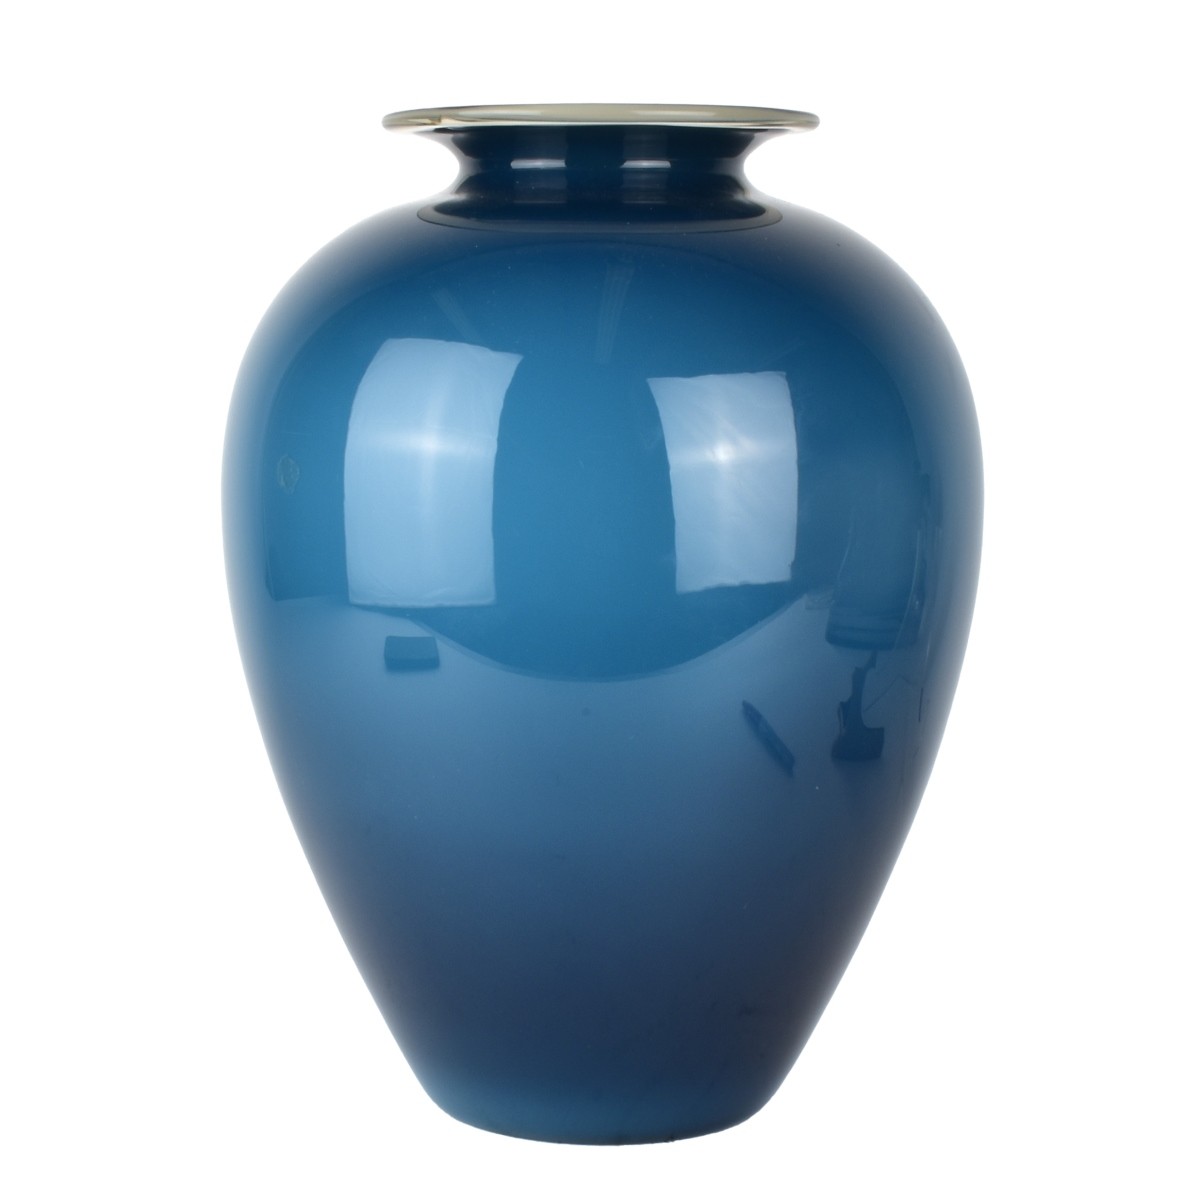 Large Vintage Art Glass Vase